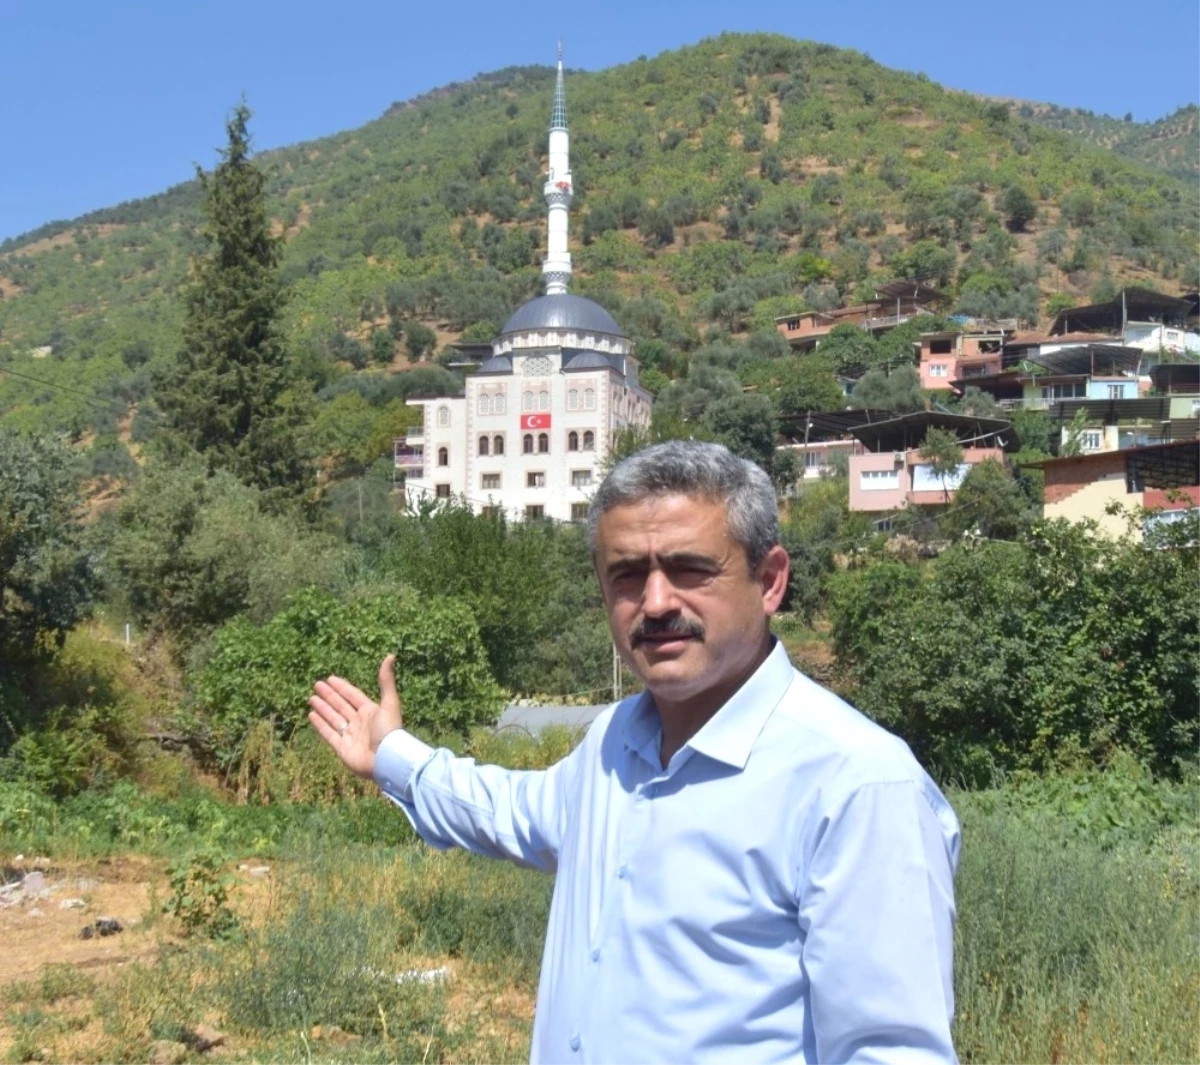 Başkan Alıcık; "Nazilli Belediyesi Olarak 6 Tane Cami Yaptık"